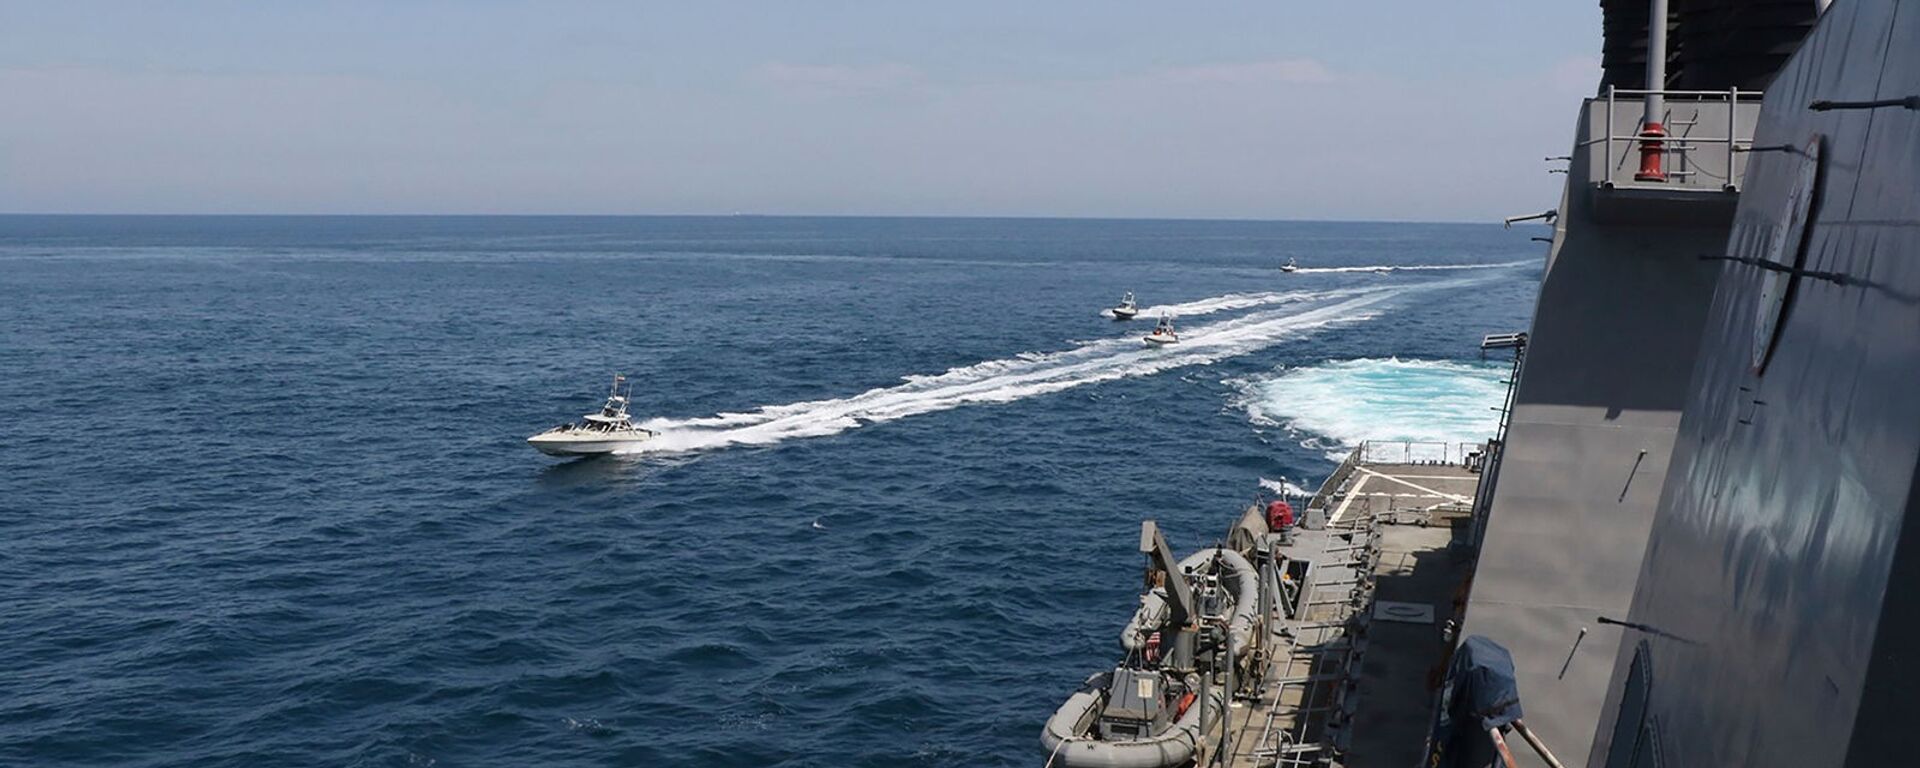 Иранские корабли Революционной гвардии плывут рядом с американскими военными кораблями в Персидском заливе близ Кувейта (15 апреля 2020). Персидский залив - Sputnik Армения, 1920, 16.02.2021